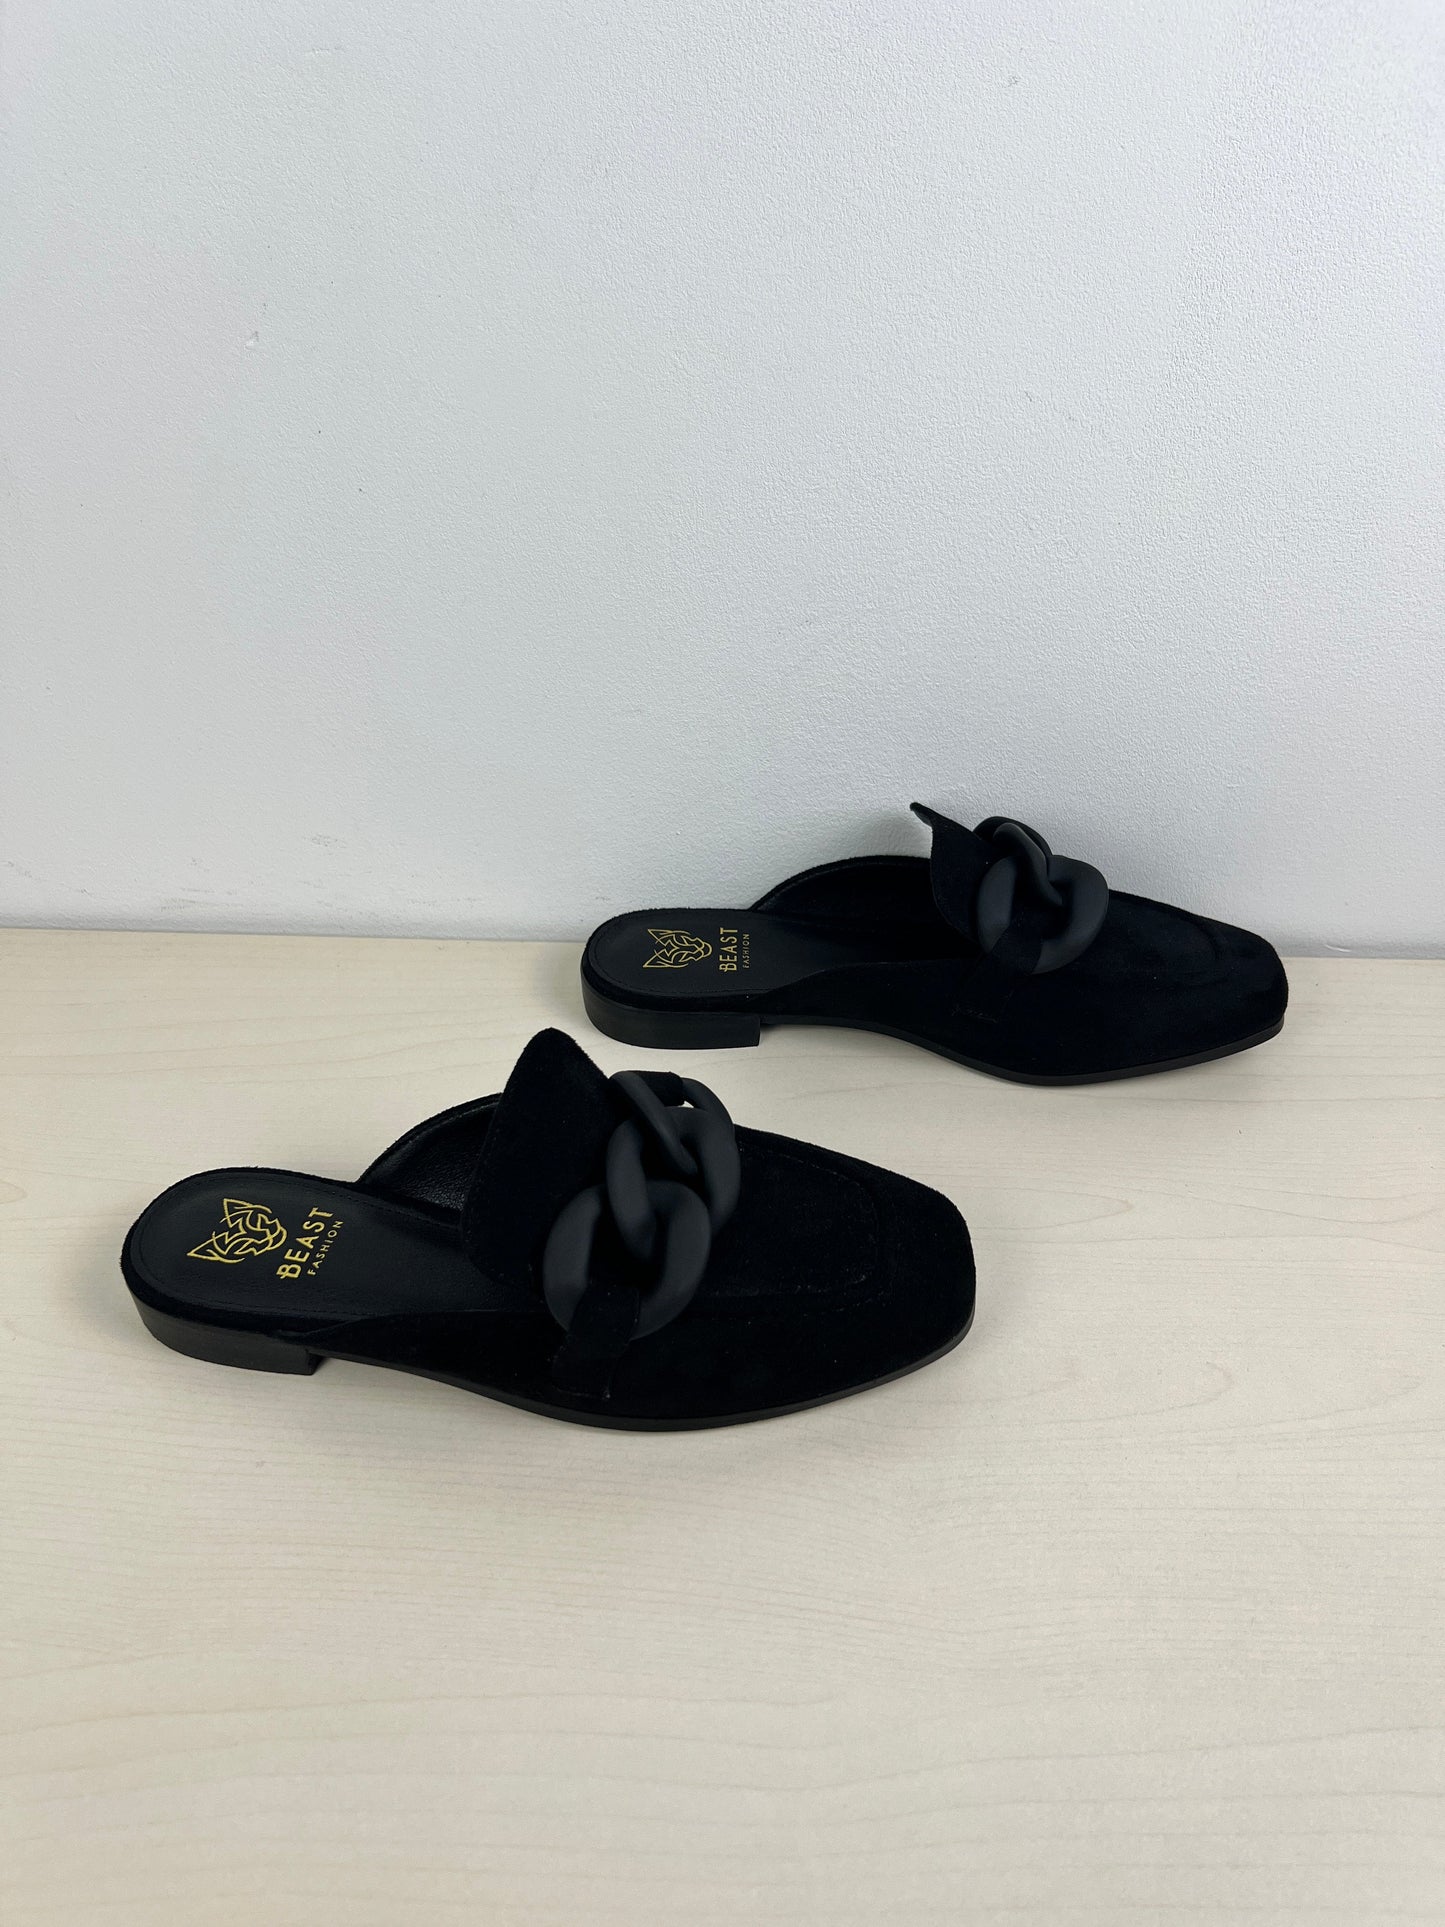 Black Shoes Flats Cmc, Size 6